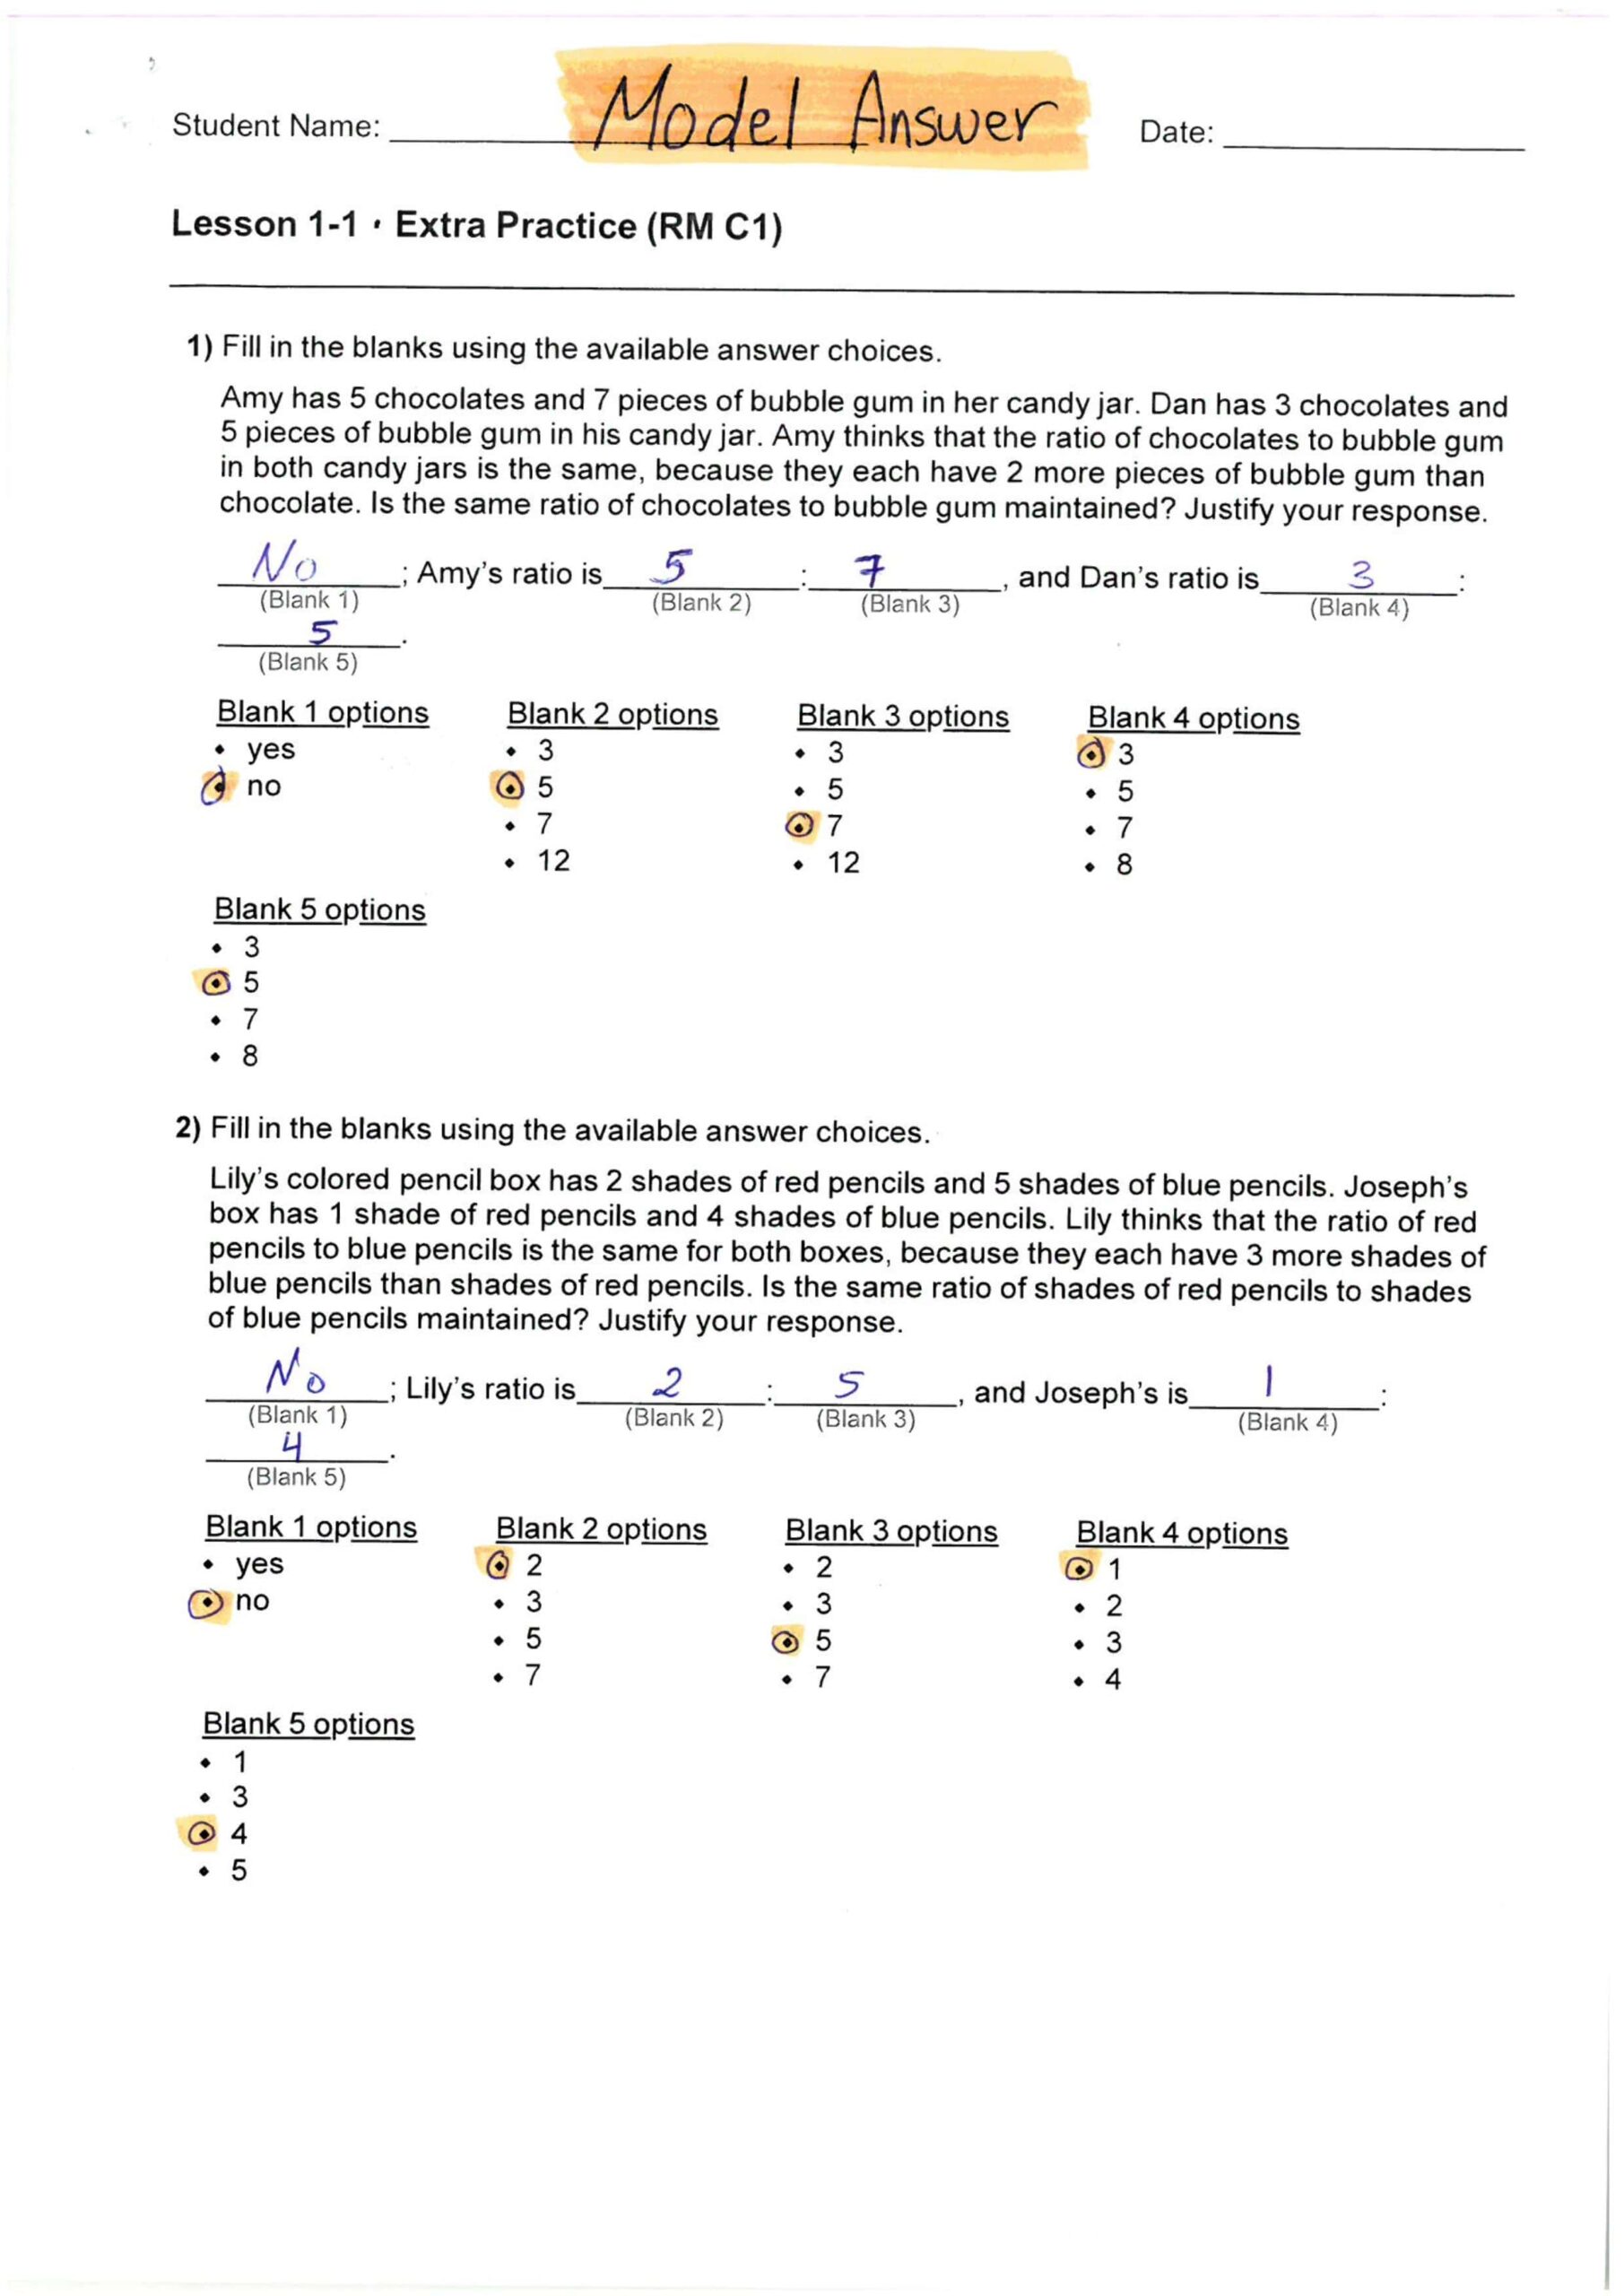 حل مراجعة الوحدة الأولى بالإنجليزي الرياضيات المتكاملة الصف السادس